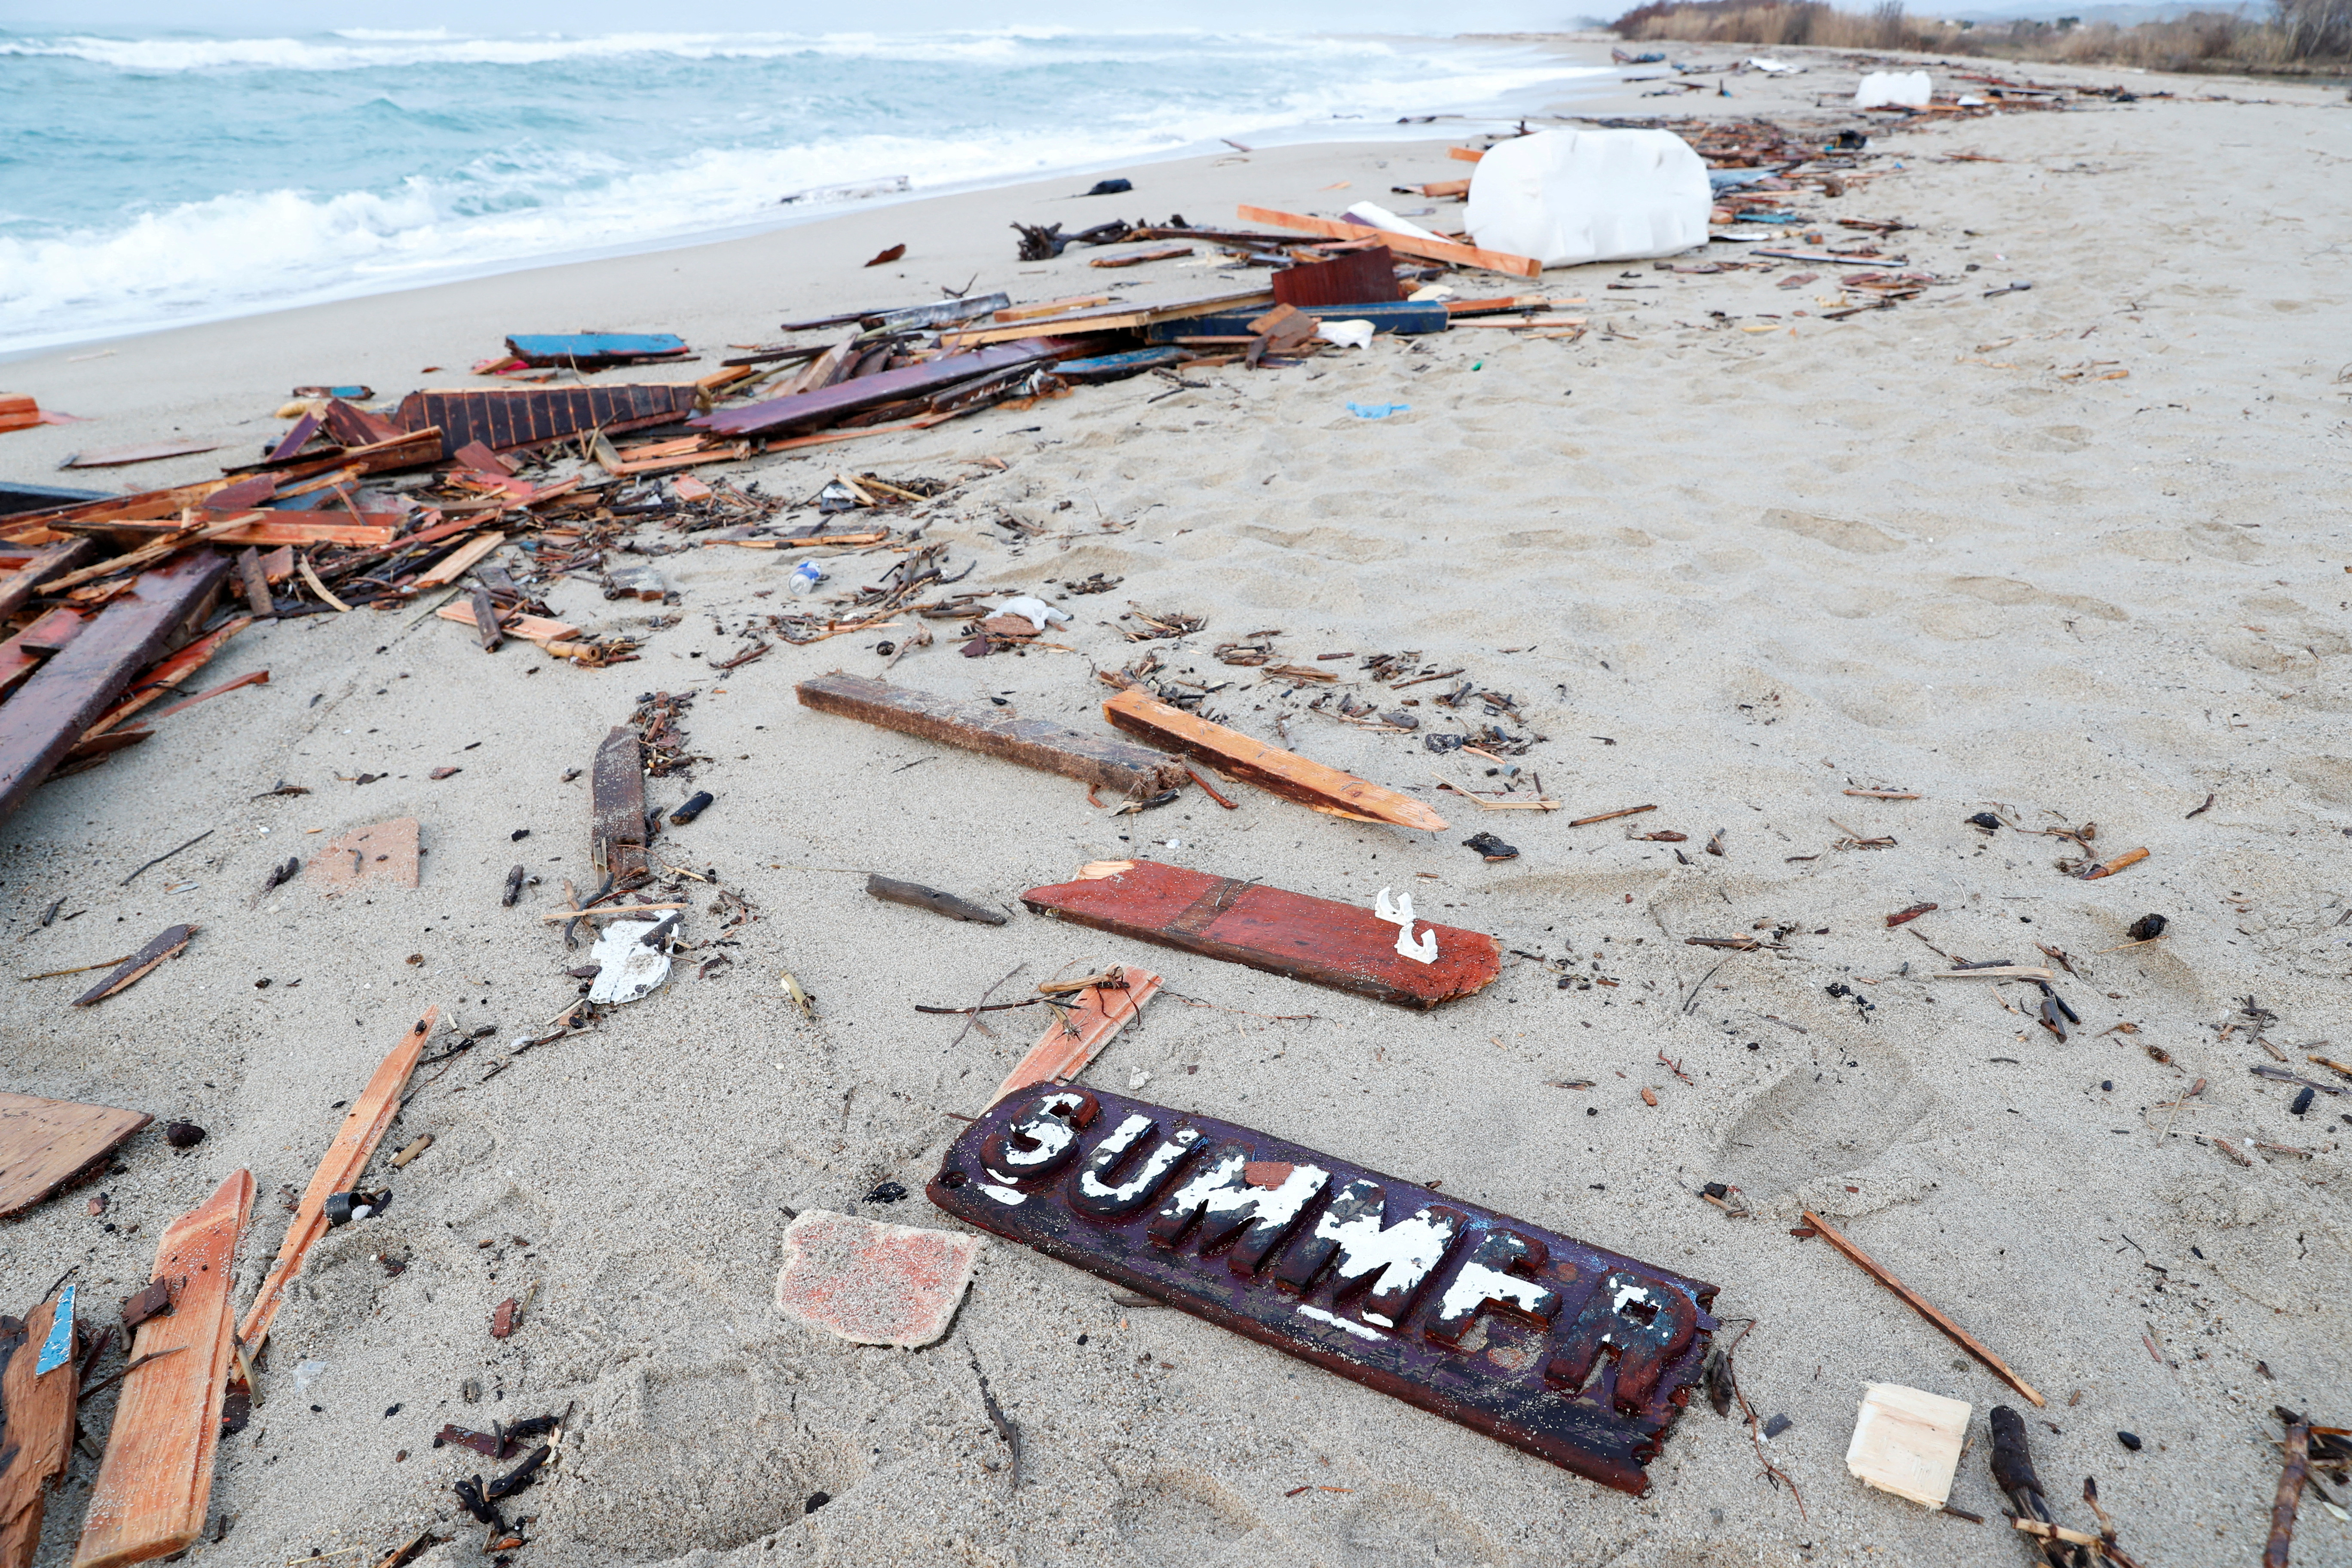 Aftermath of deadly migrant shipwreck in Steccato di Cutro near Crotone